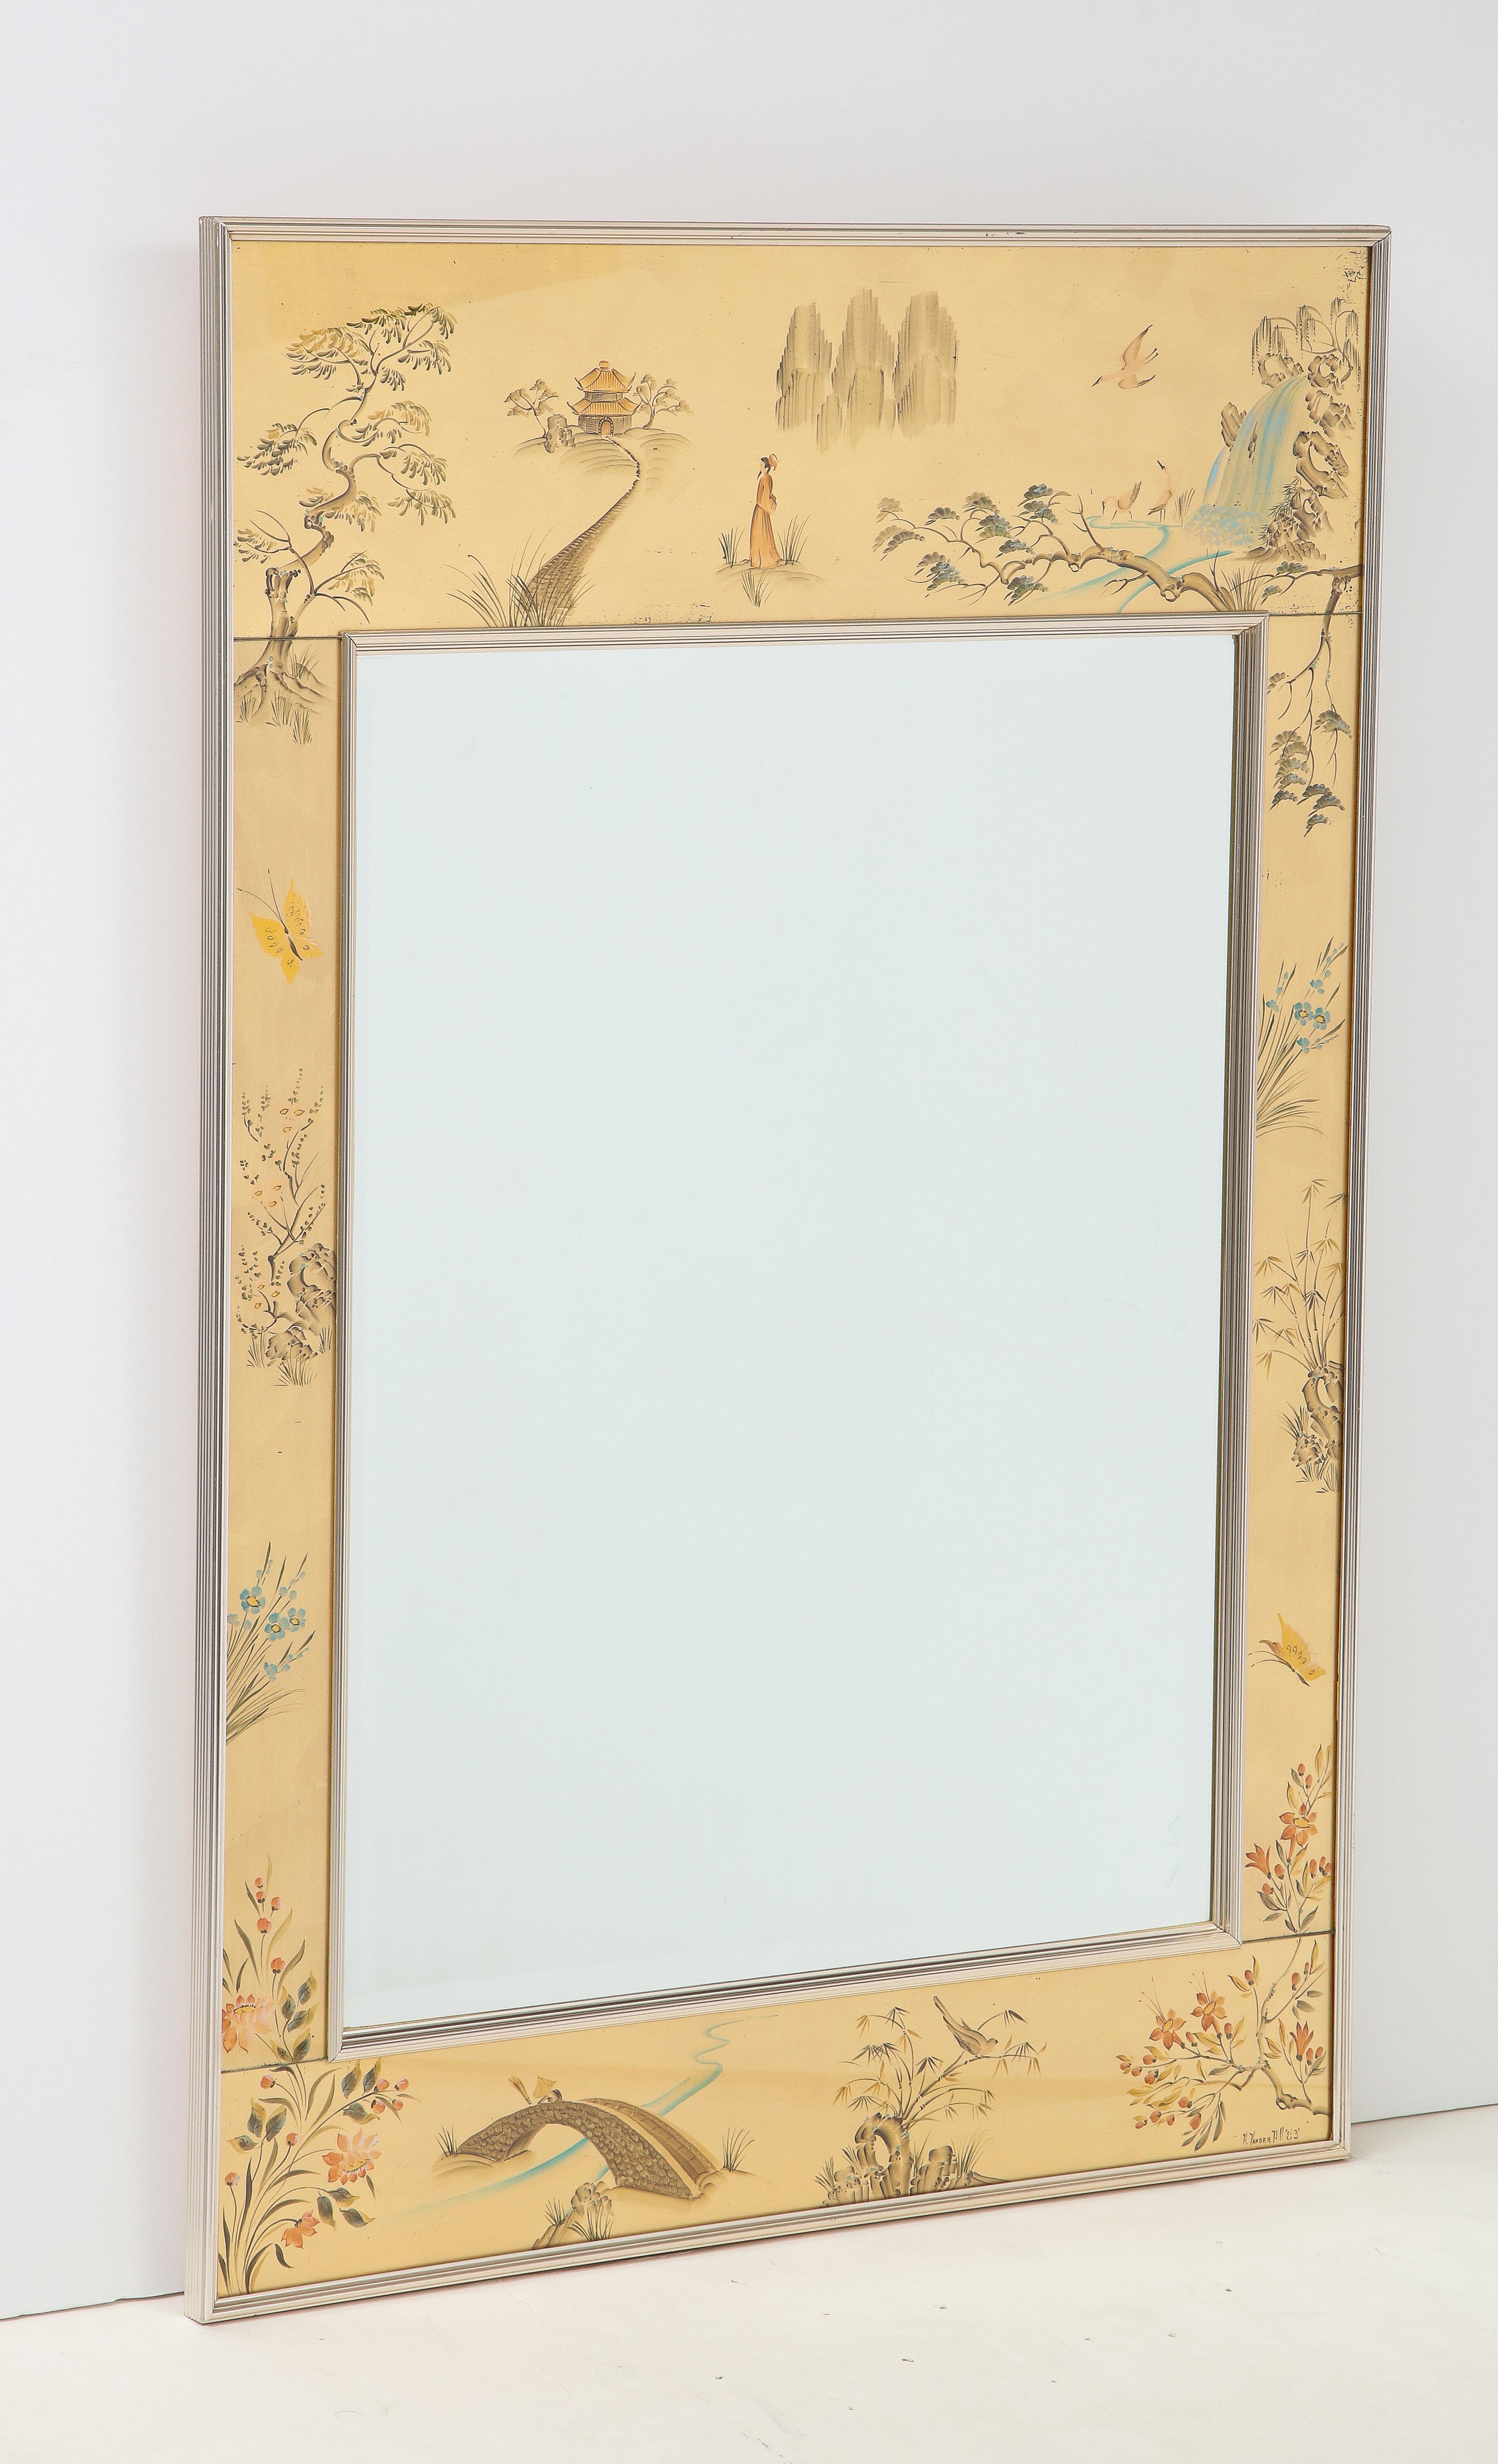 Miroir de style Chinoiserie avec des panneaux en églomisé à la feuille d'or représentant diverses scènes de nature avec flore et chutes d'eau. Les panneaux entourent un miroir biseauté au centre, le tout dans un cadre métallique.